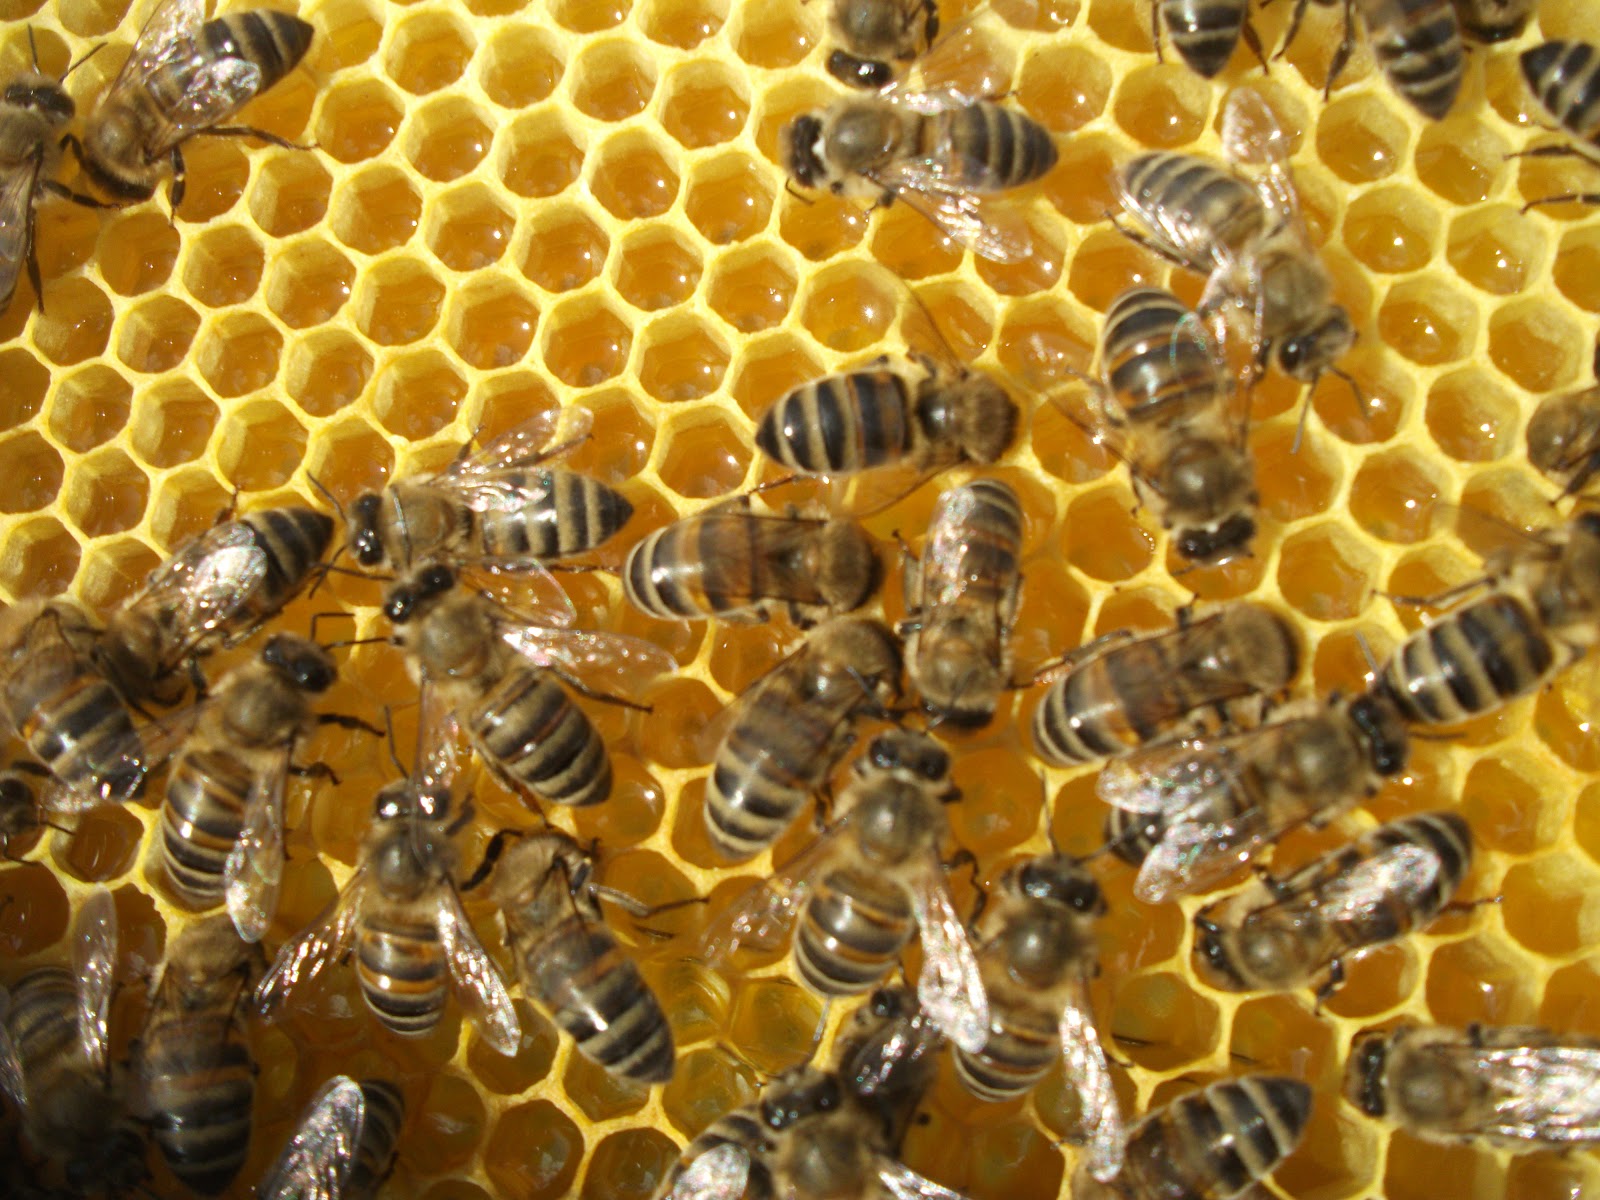 İnsanoğlu Teknoloji Sayesinde Arılarla İletişim Kurmayı Başardı!